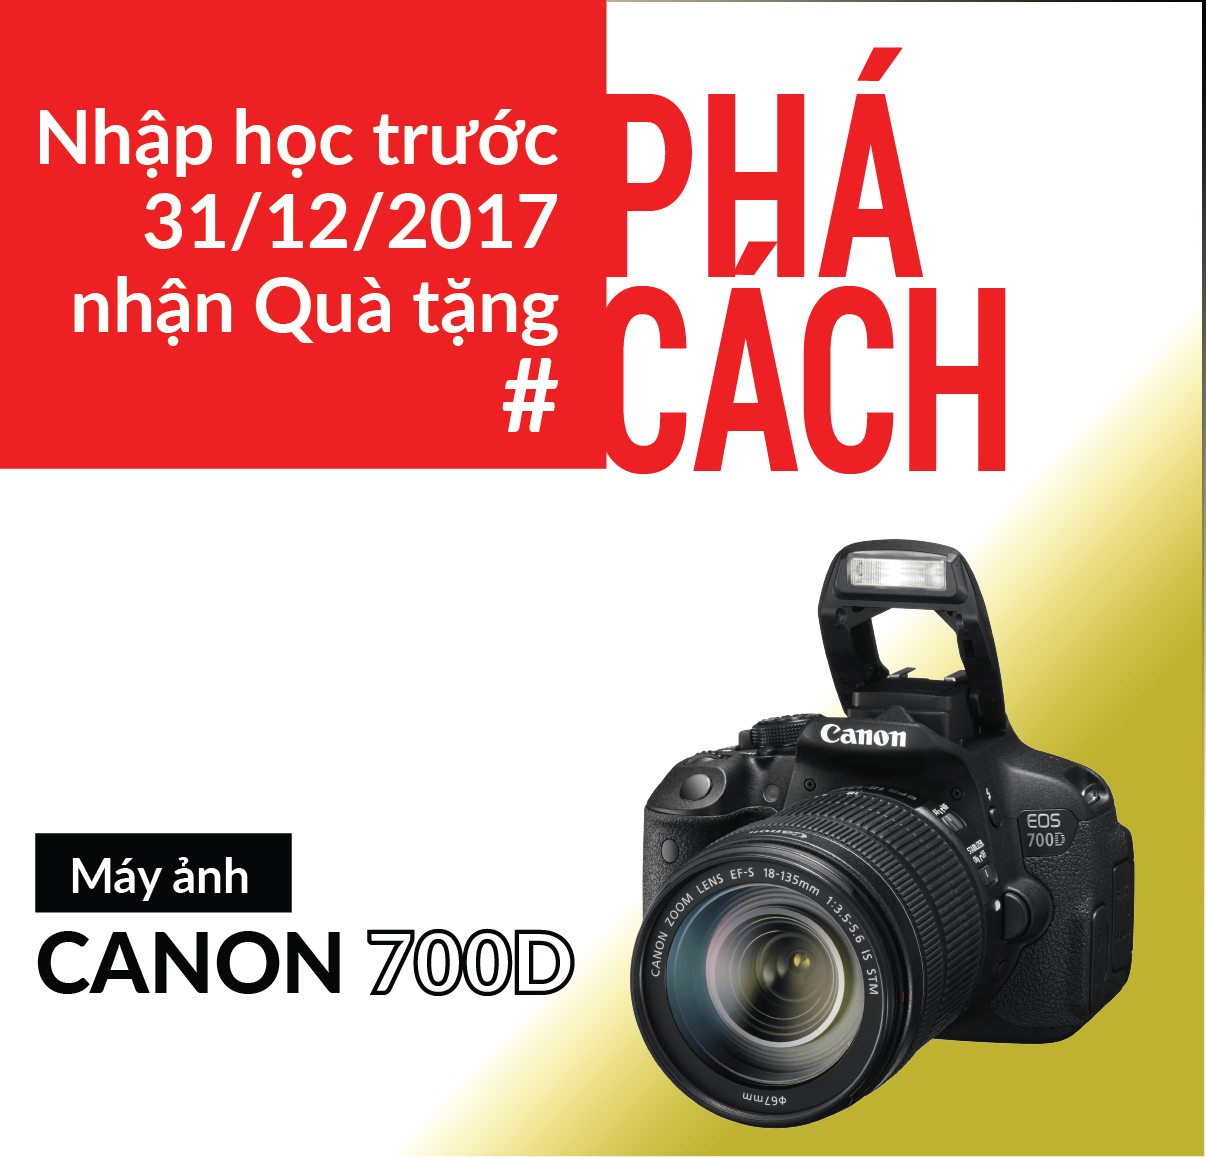 Camera Canon 700D